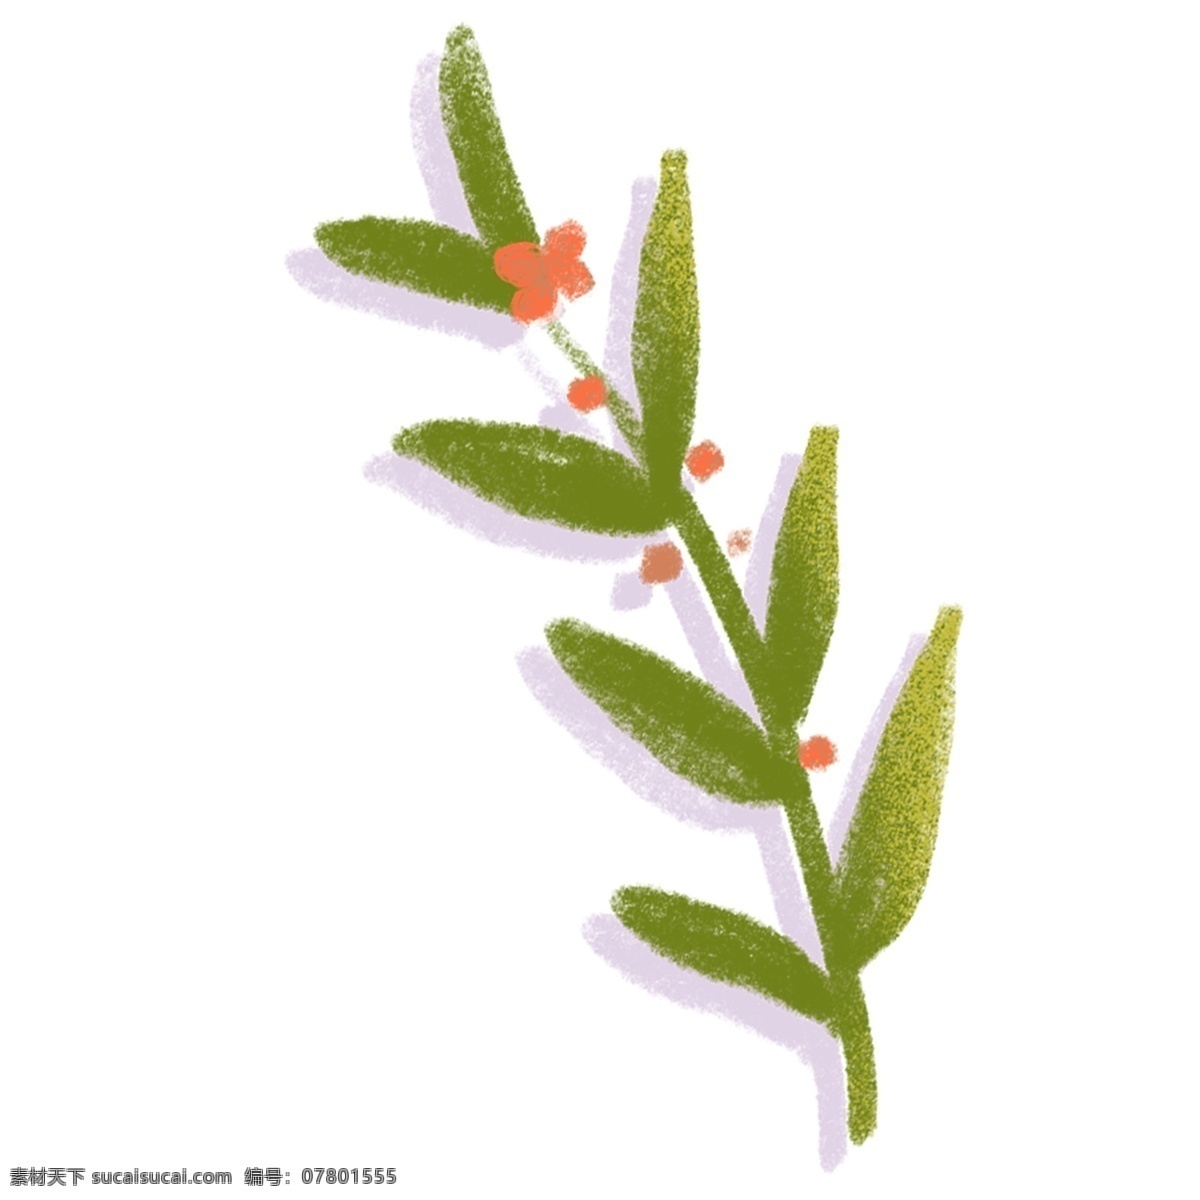 水彩 绿叶 花朵 插画 小草 植物 卡通 彩色 小清新 创意 装饰 图案 手绘风